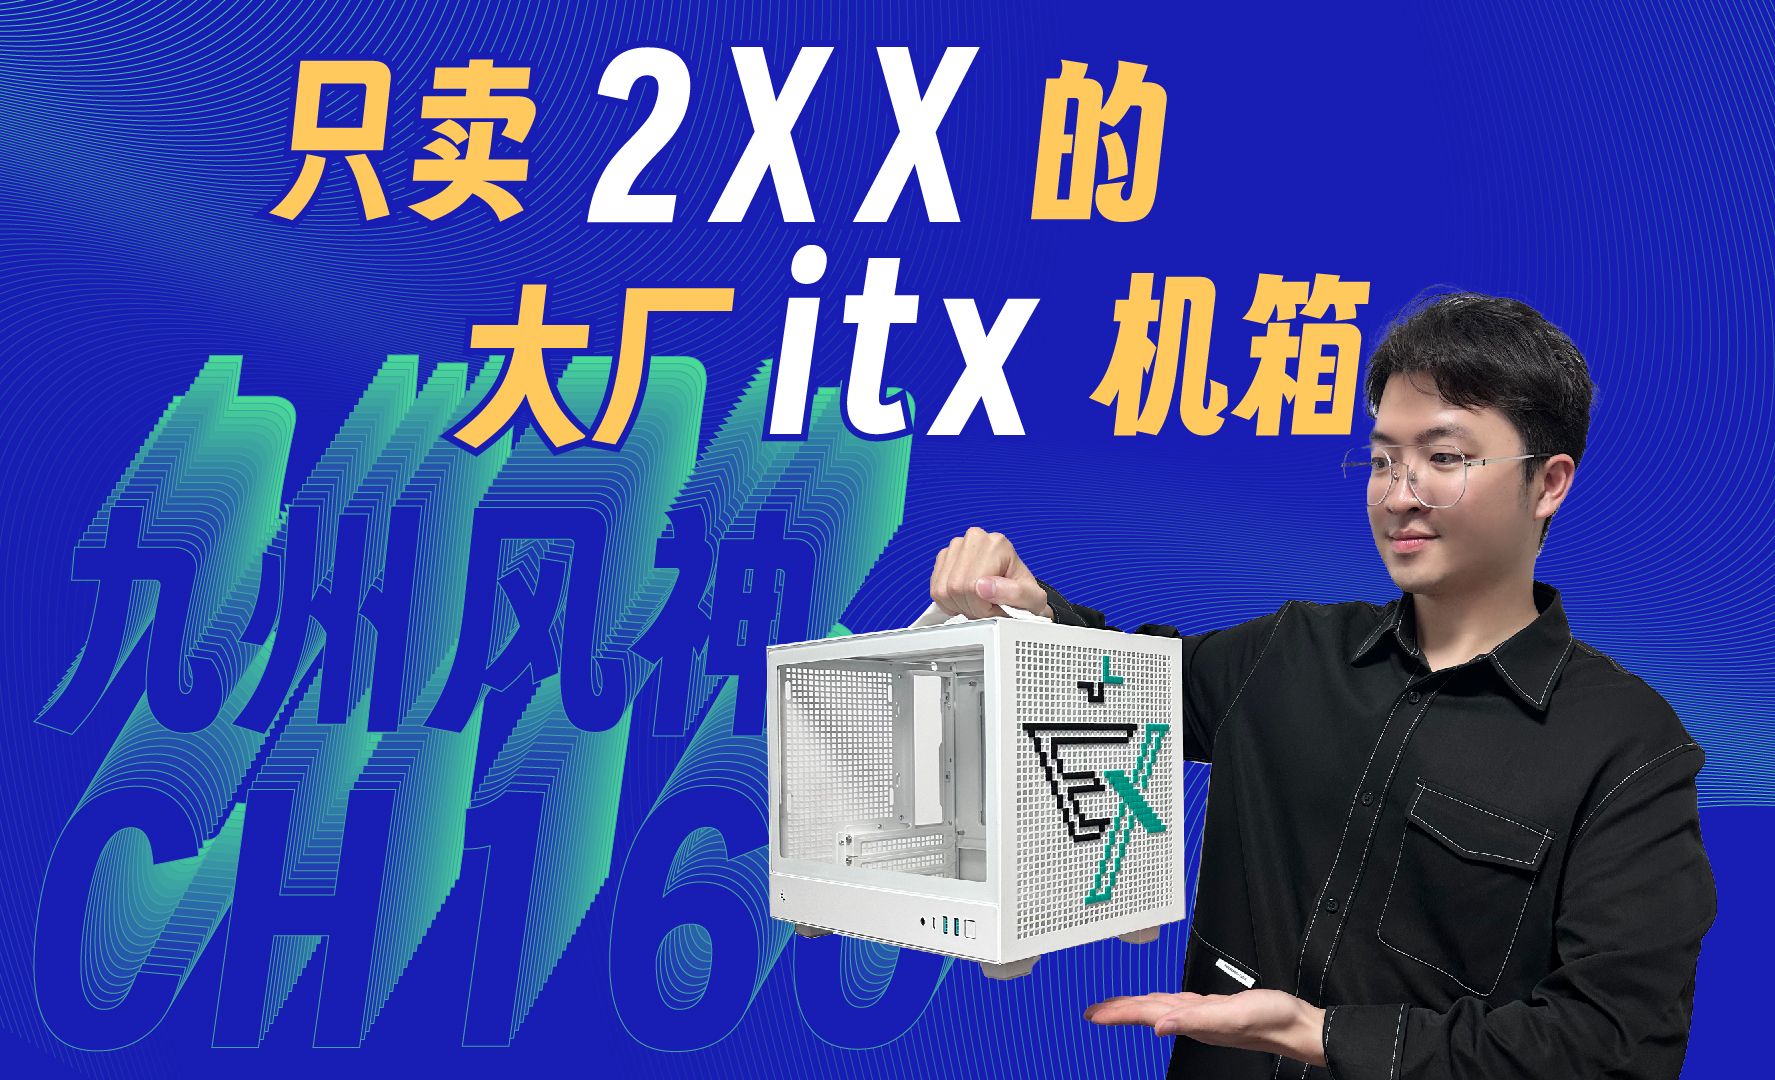 2XX元的大厂16升itx表现如何-九州风神CH160